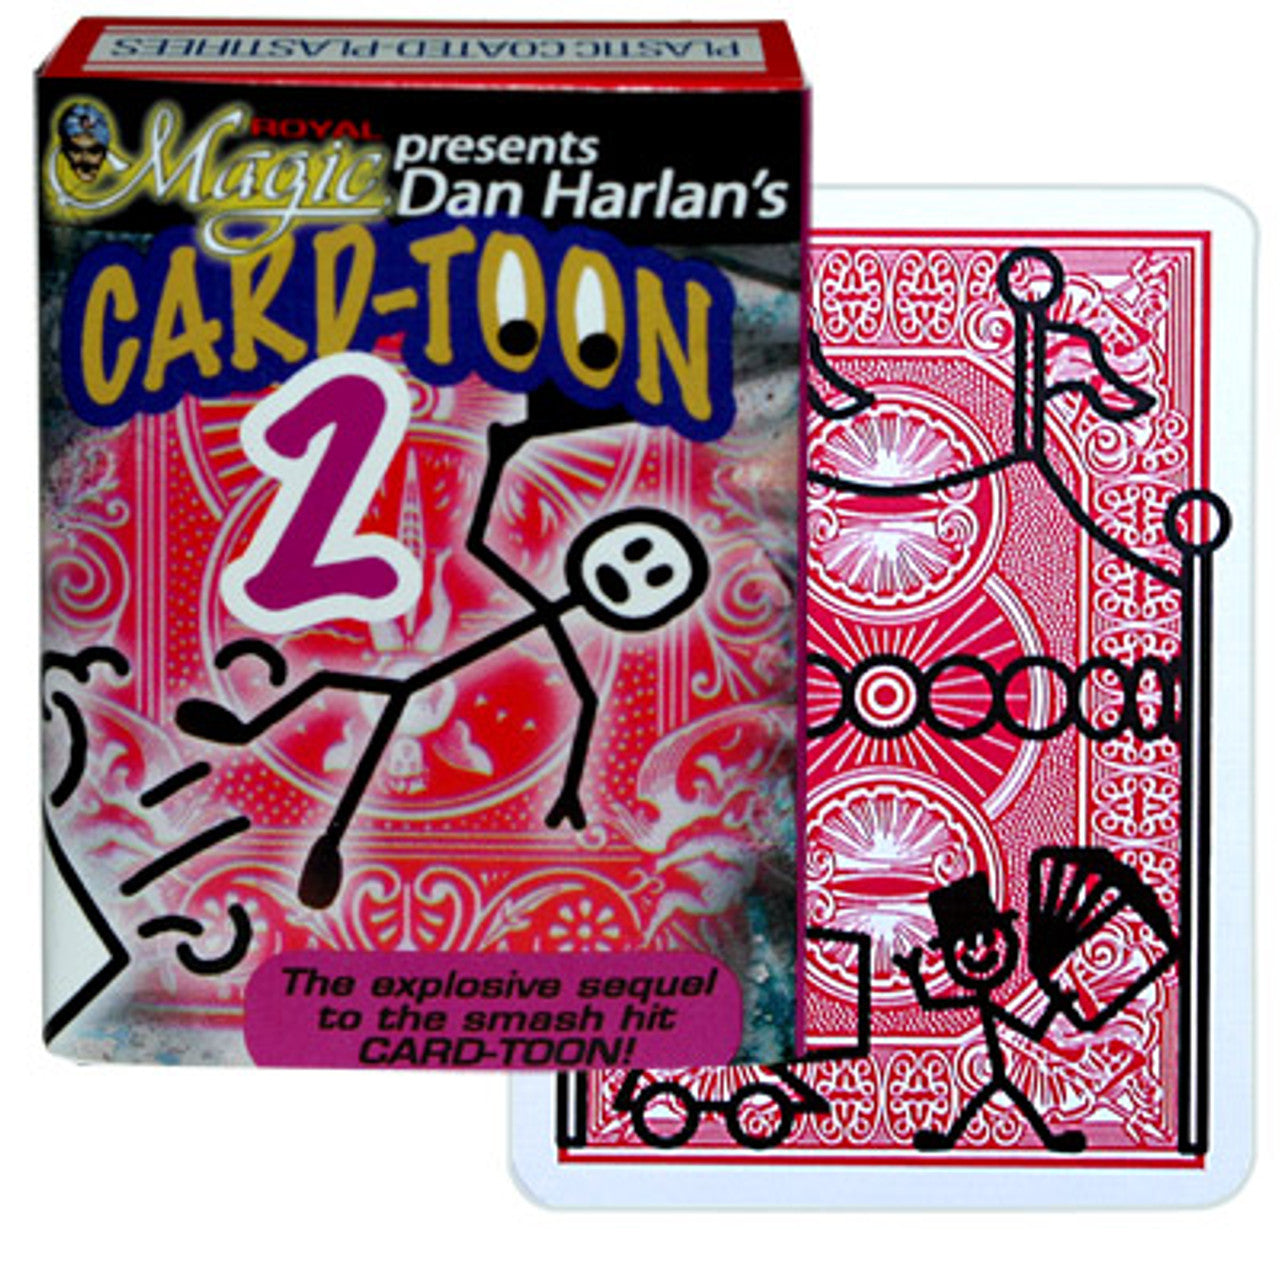 CarteToon #2